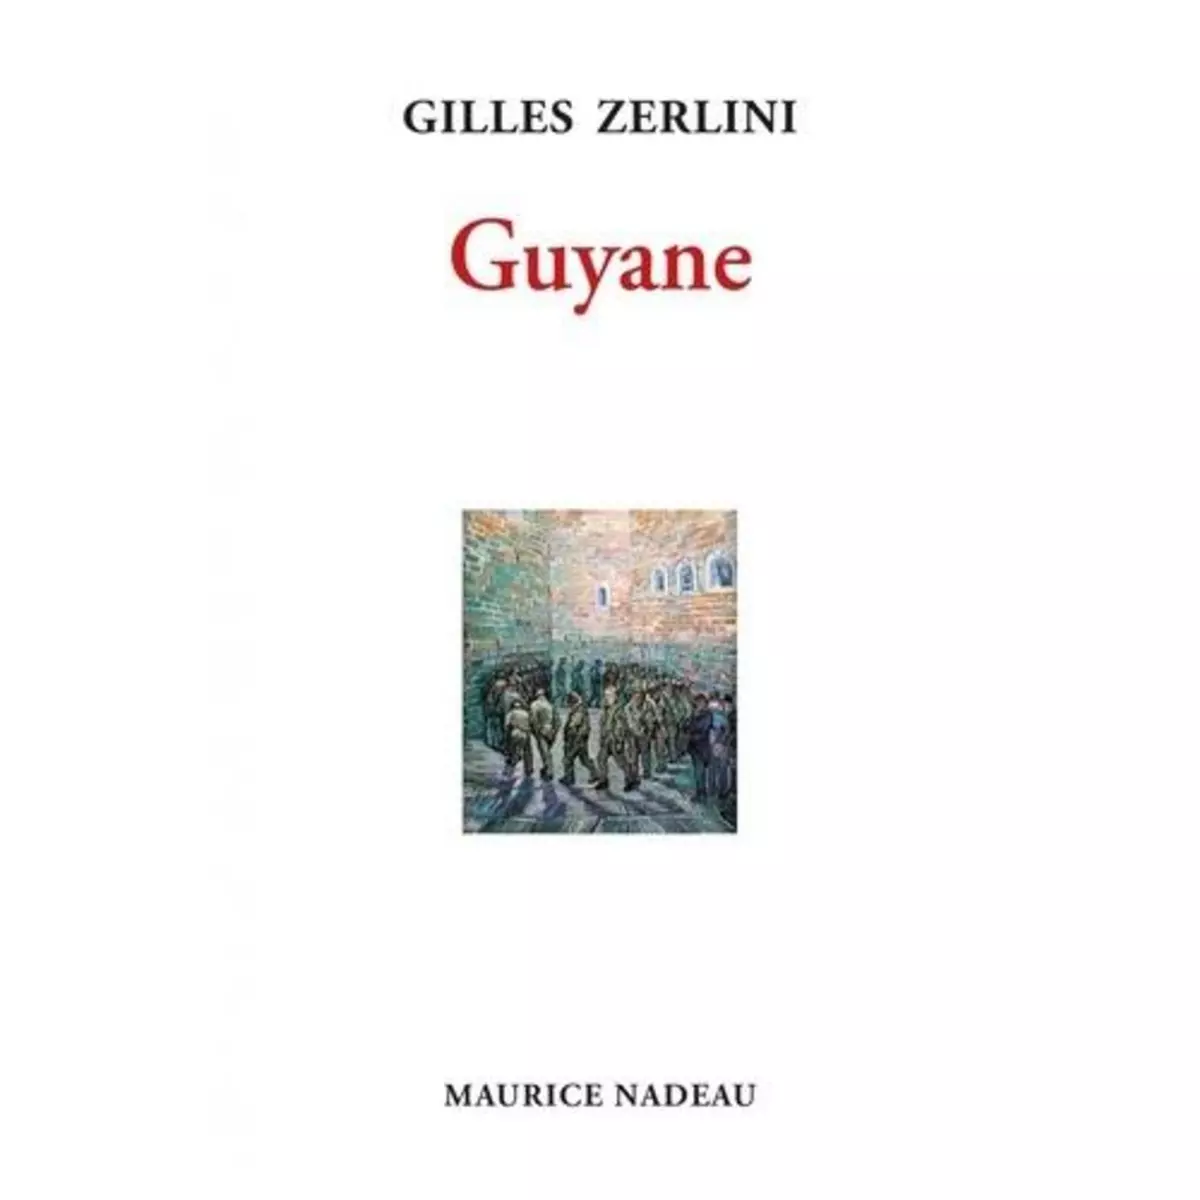  GUYANE, Zerlini Gilles